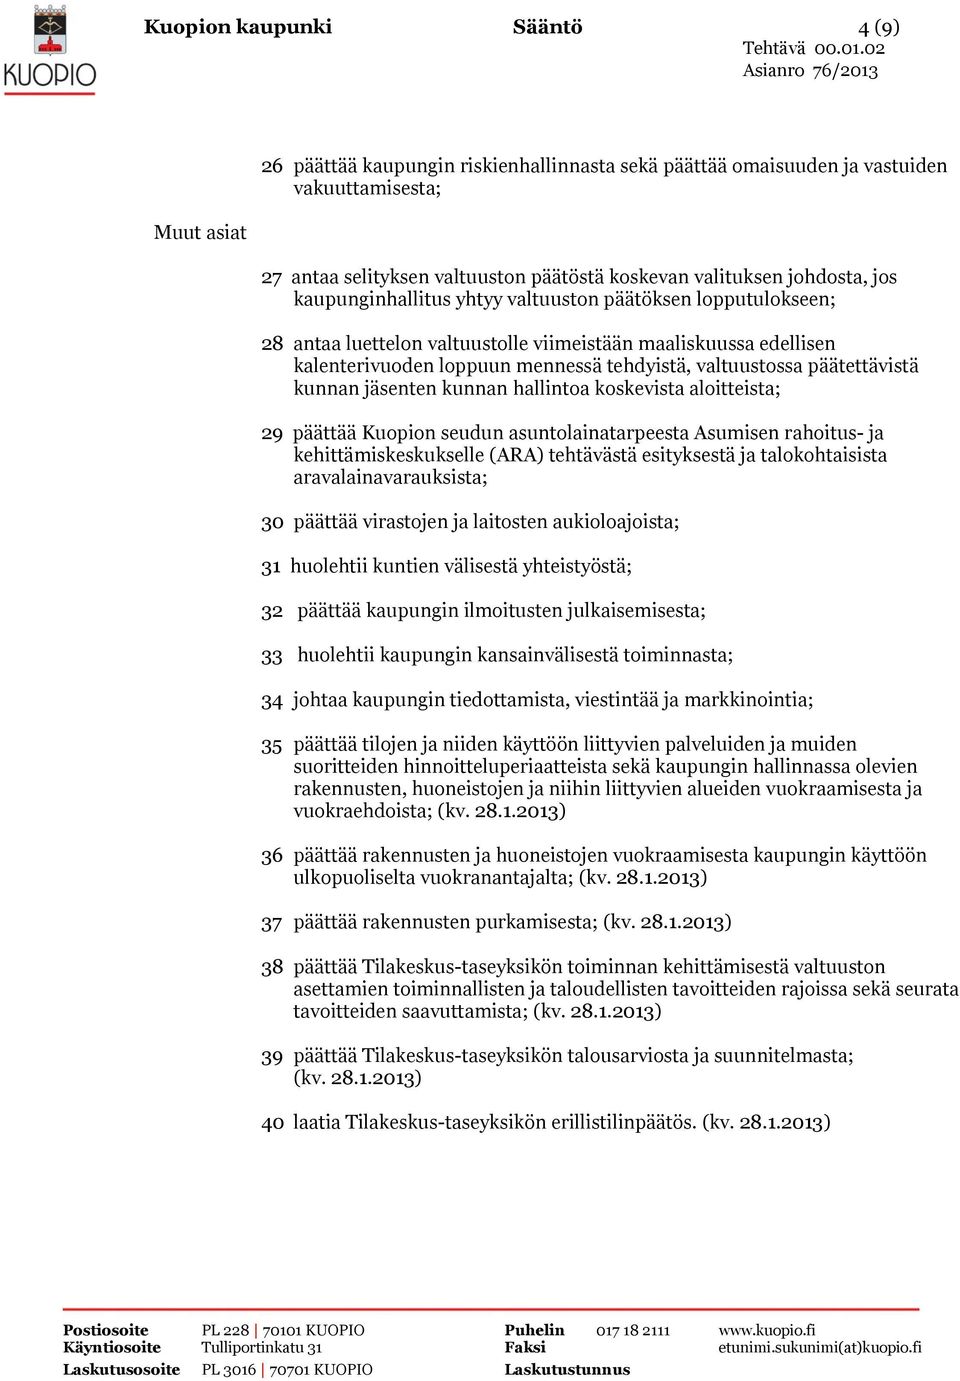 päätettävistä kunnan jäsenten kunnan hallintoa koskevista aloitteista; 29 päättää Kuopion seudun asuntolainatarpeesta Asumisen rahoitus- ja kehittämiskeskukselle (ARA) tehtävästä esityksestä ja